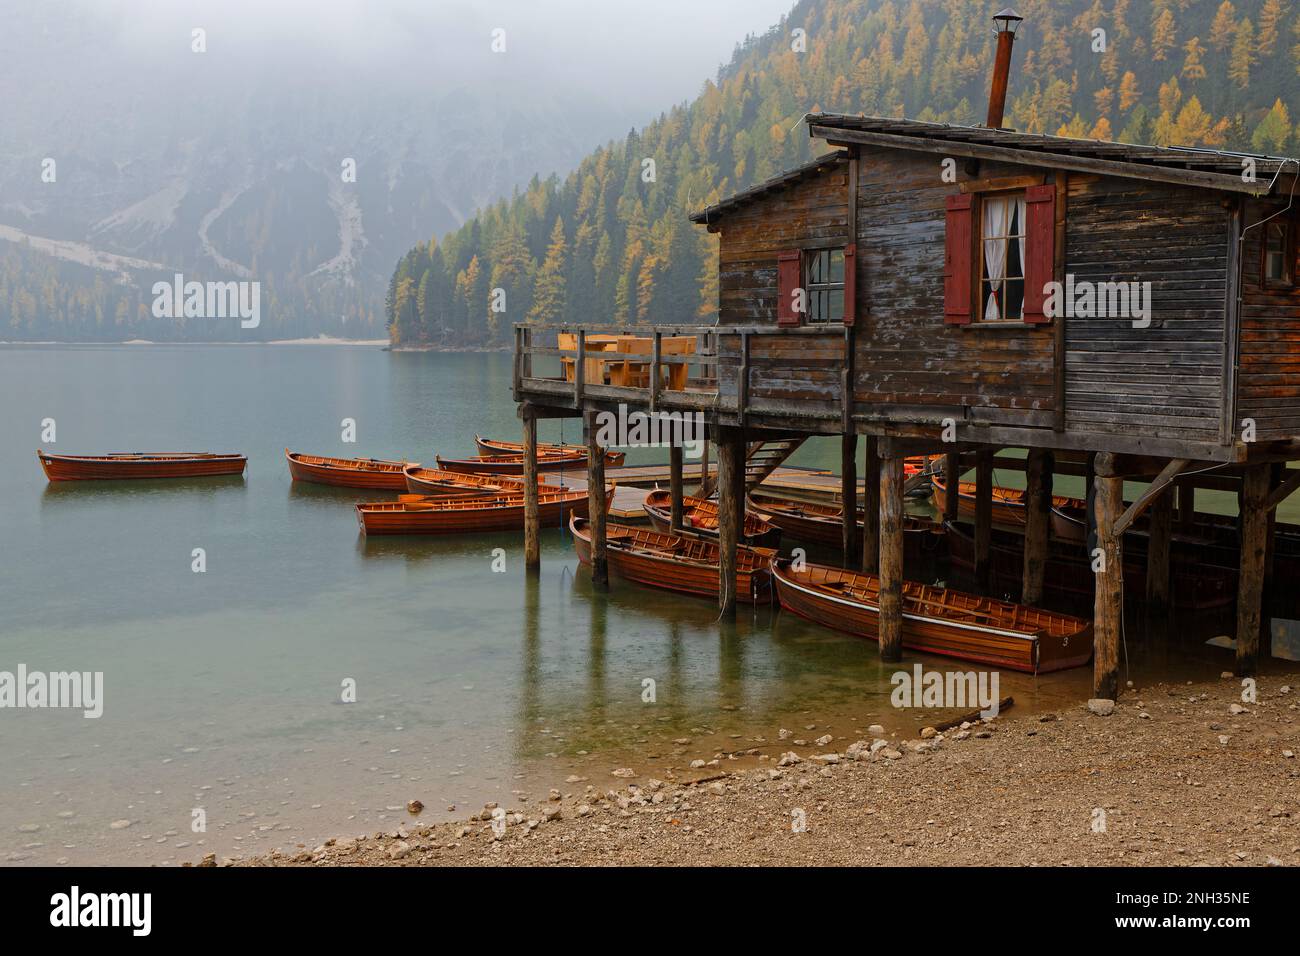 BRAIES, ITALIE, 21 octobre 2021 : petits bateaux touristiques sur Lago di Braies.Lac de gagner le surnom de la Perle des Alpes en raison de son popularist croissant Banque D'Images